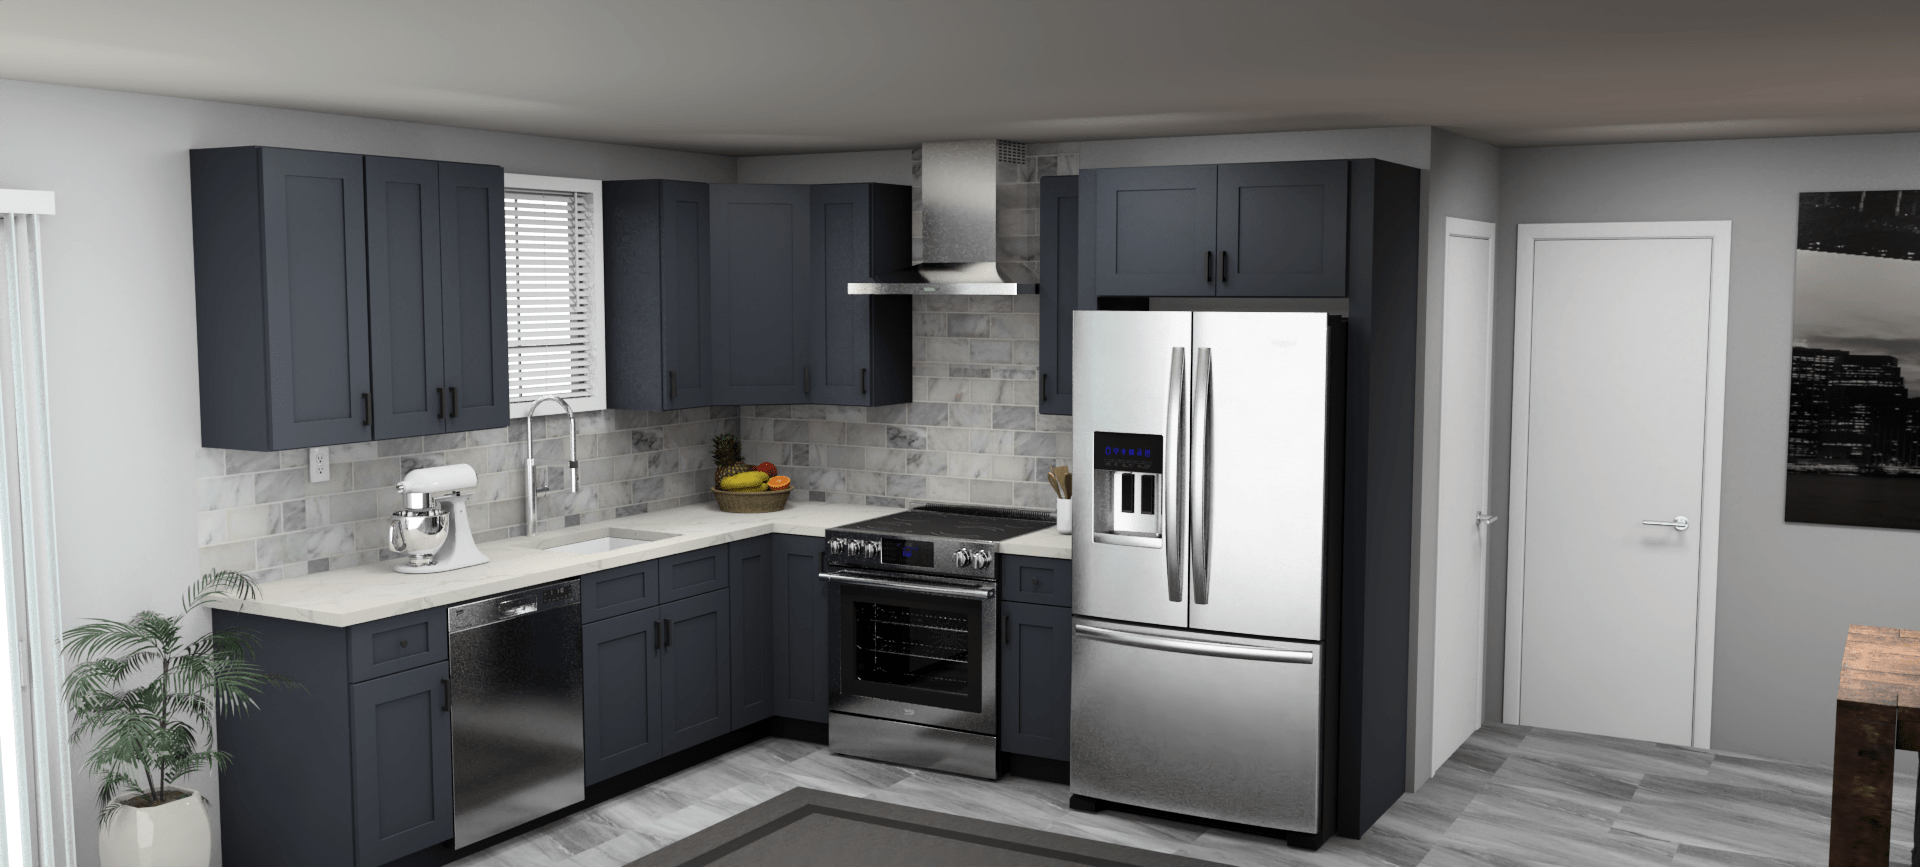 Fabuwood Allure Galaxy Indigo 9 x 10 L Shaped Kitchen Main Layout Photo